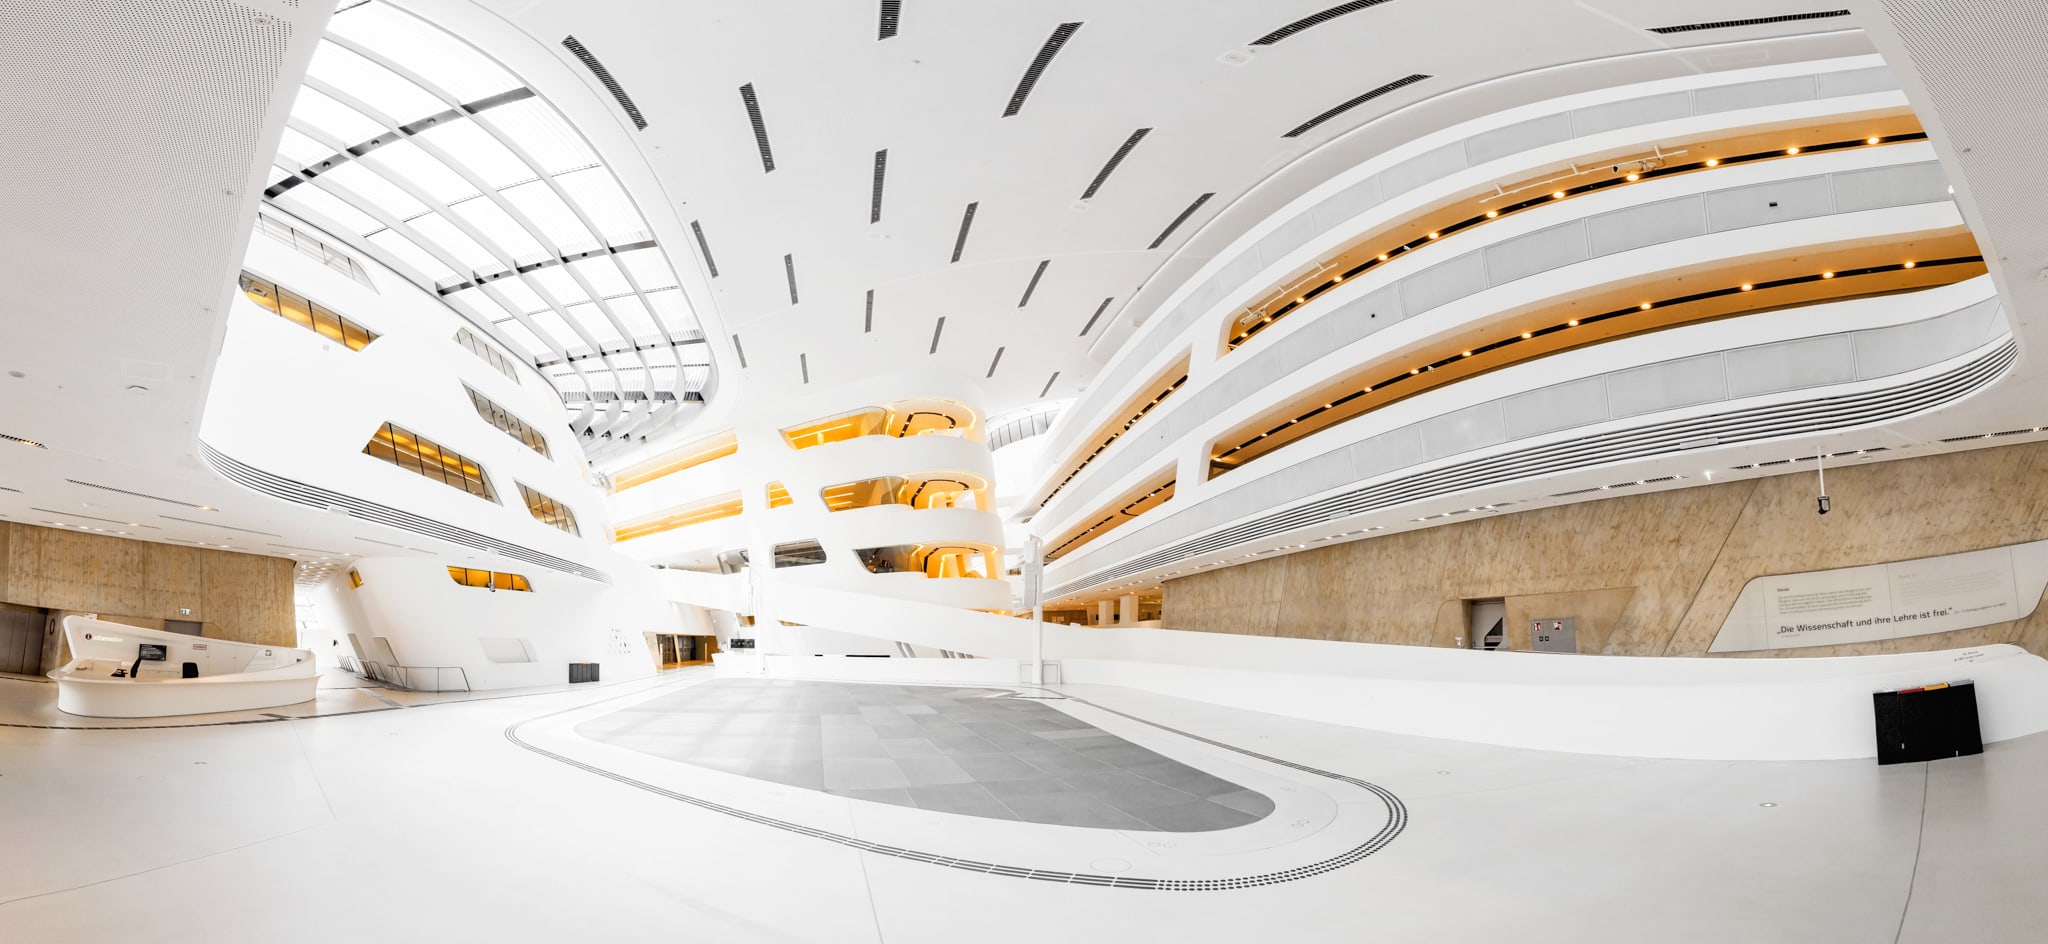 Wirtschaftsuniversität Wien, Library & Learning Center – Architekturfotografie